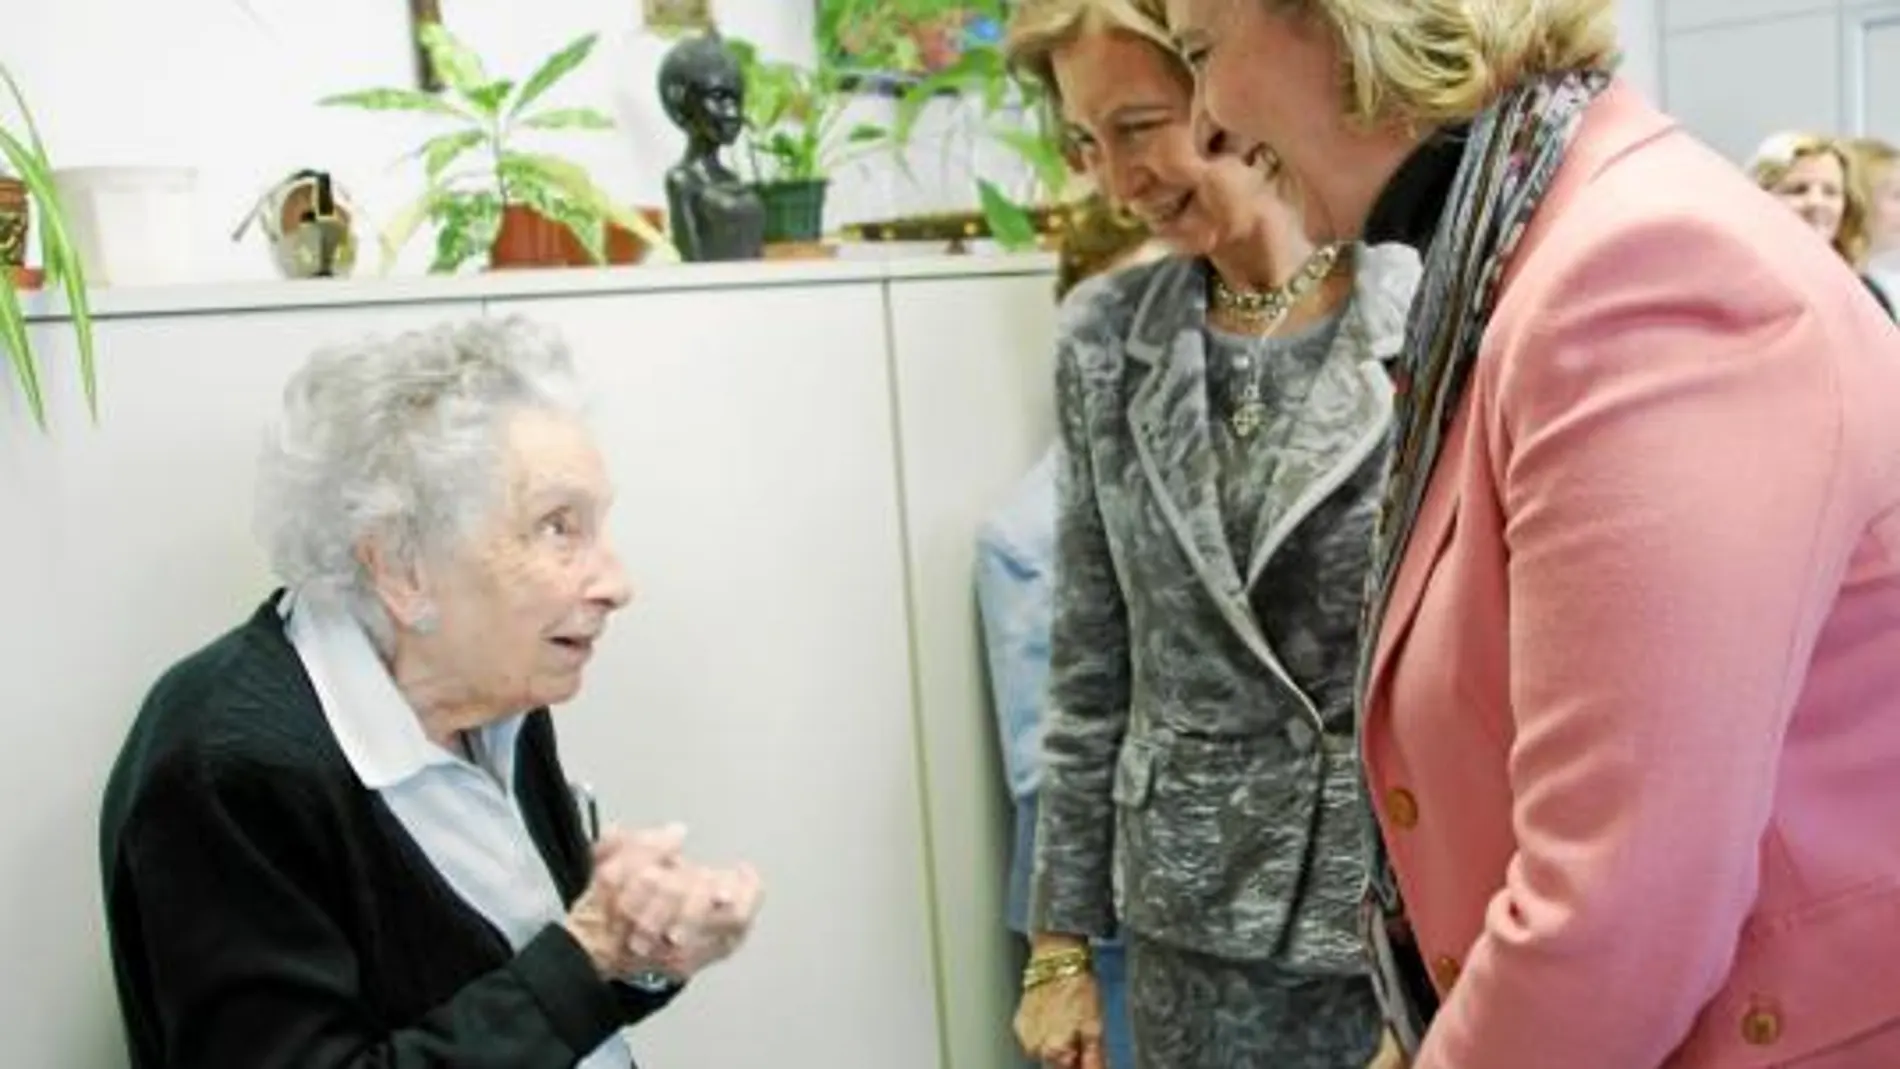 Doña Sofía, en compañía de la presidenta de Manos Unidas, Myriam García Abrisqueta, saludan a la María Manuela, la voluntaria más veterana